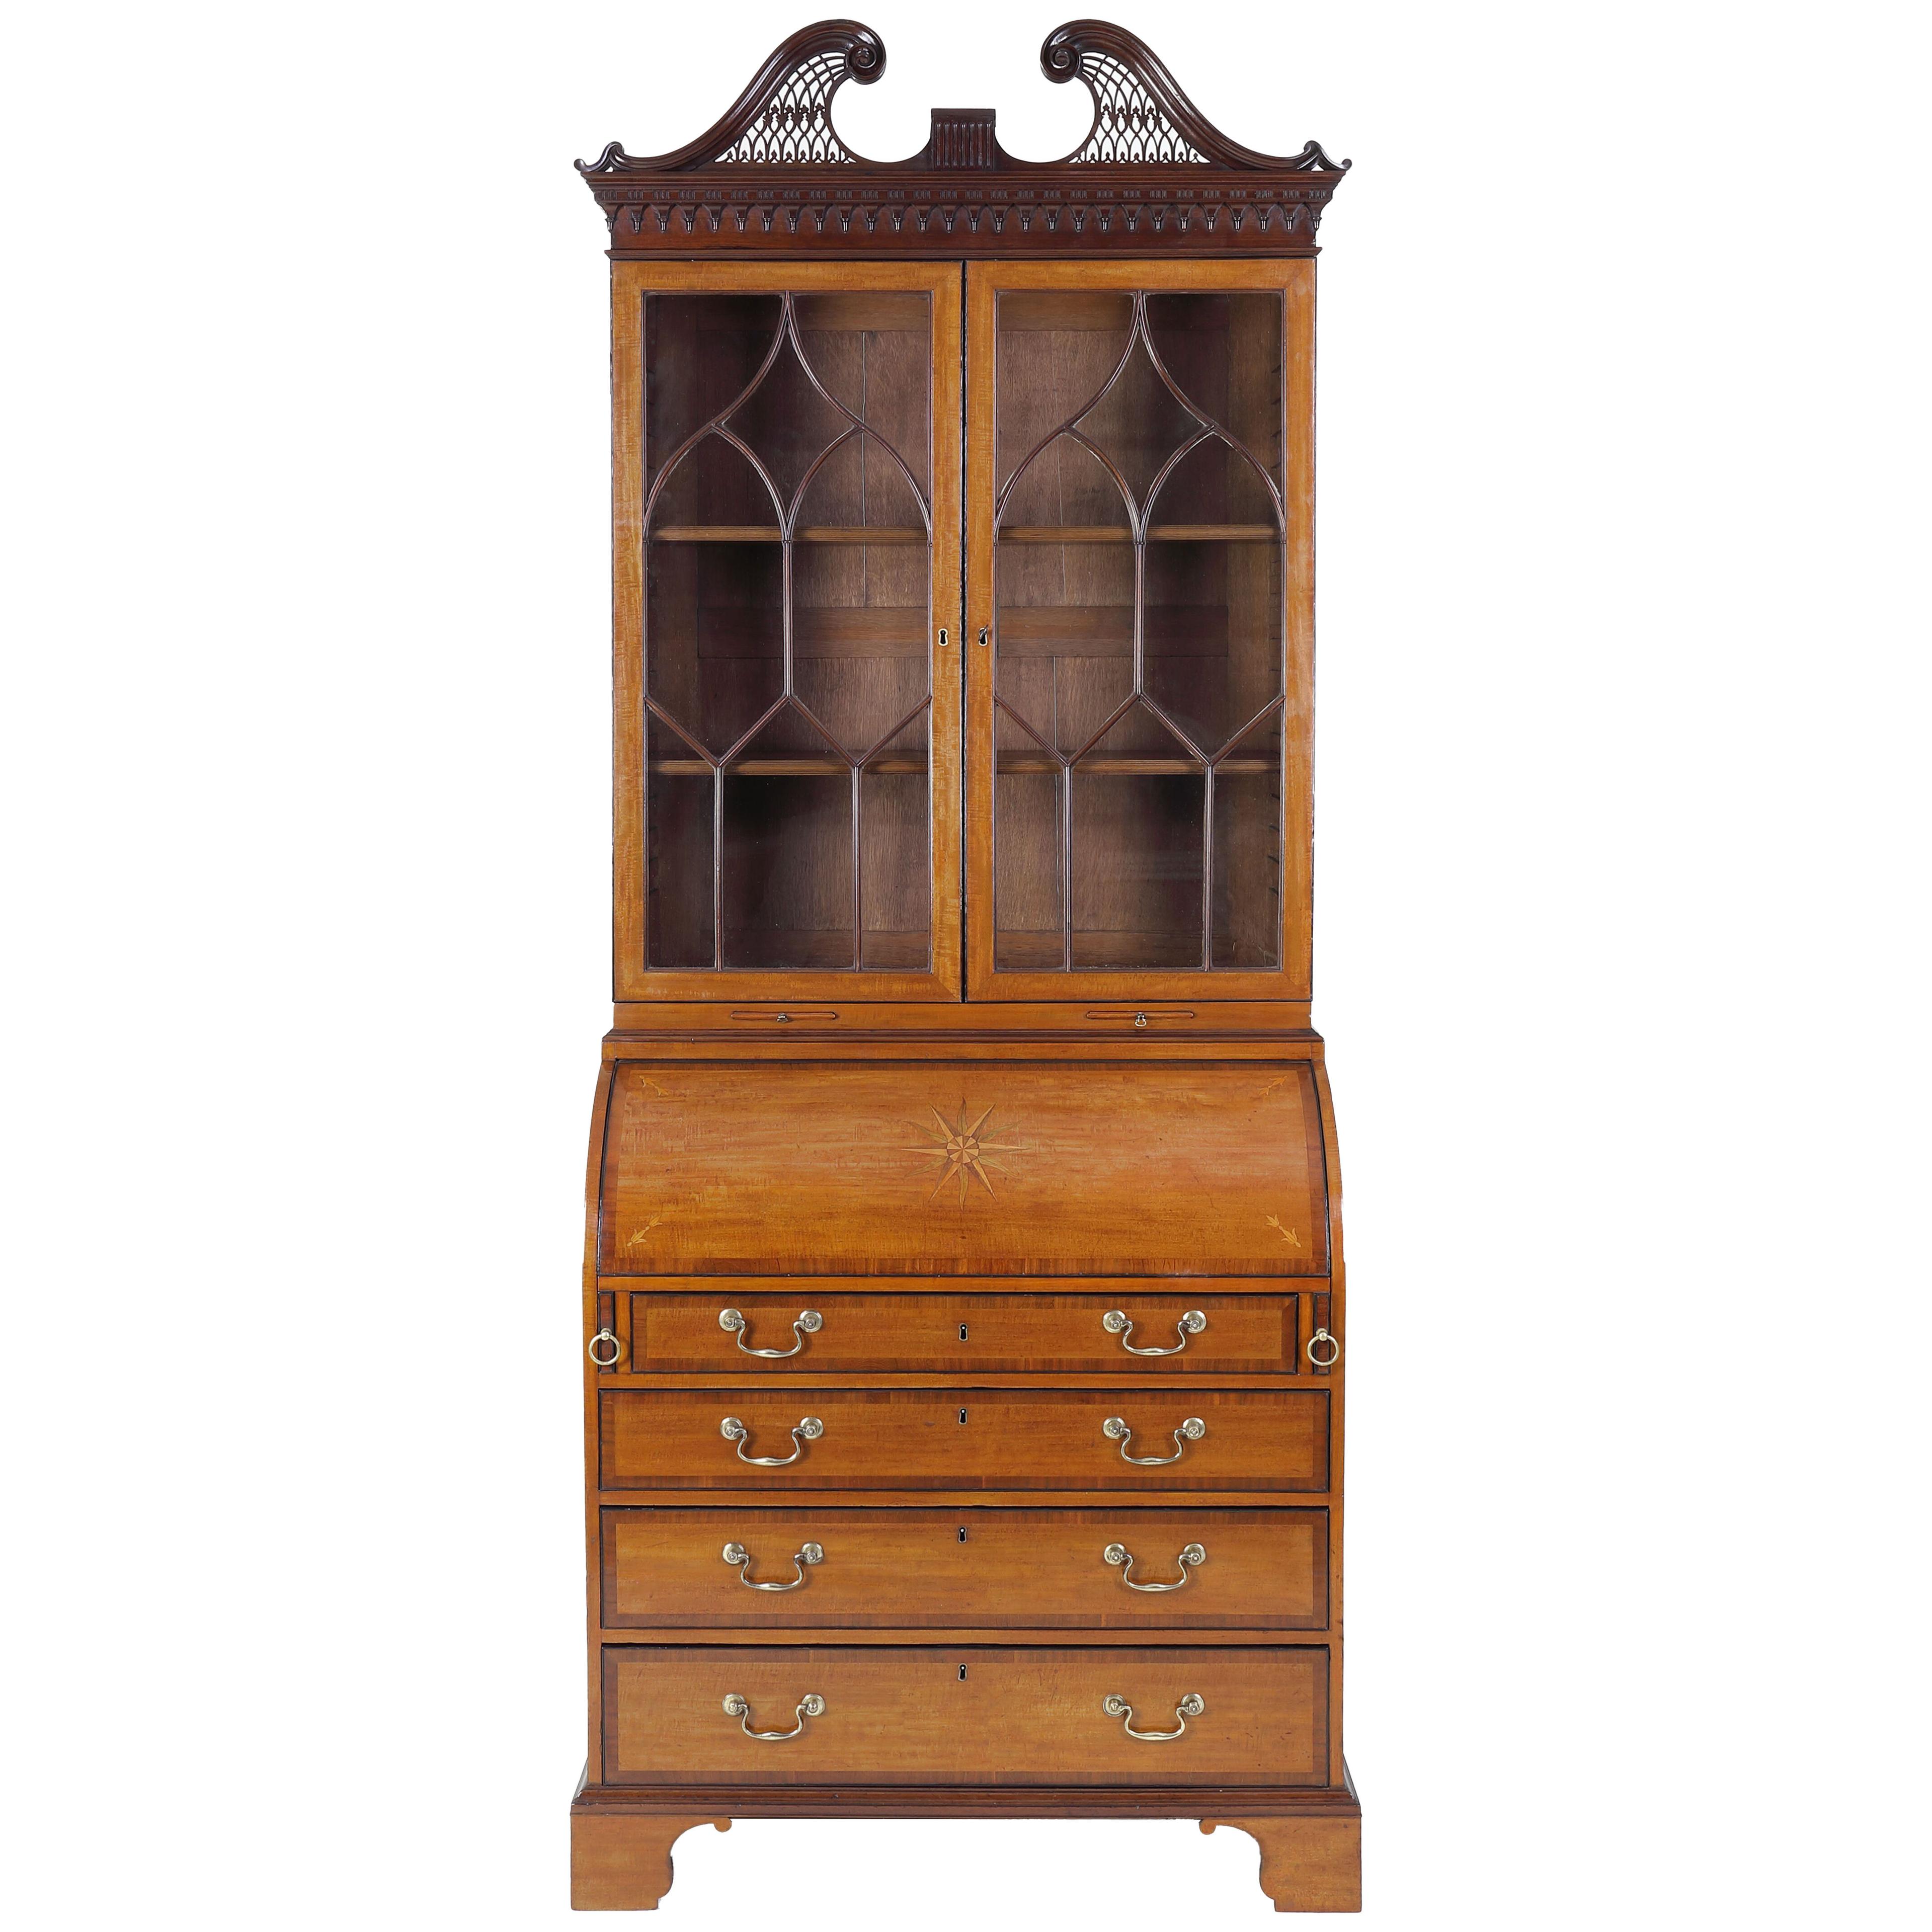 Satinwood and mahogany bureau bookcase attributable to Thomas Shearer